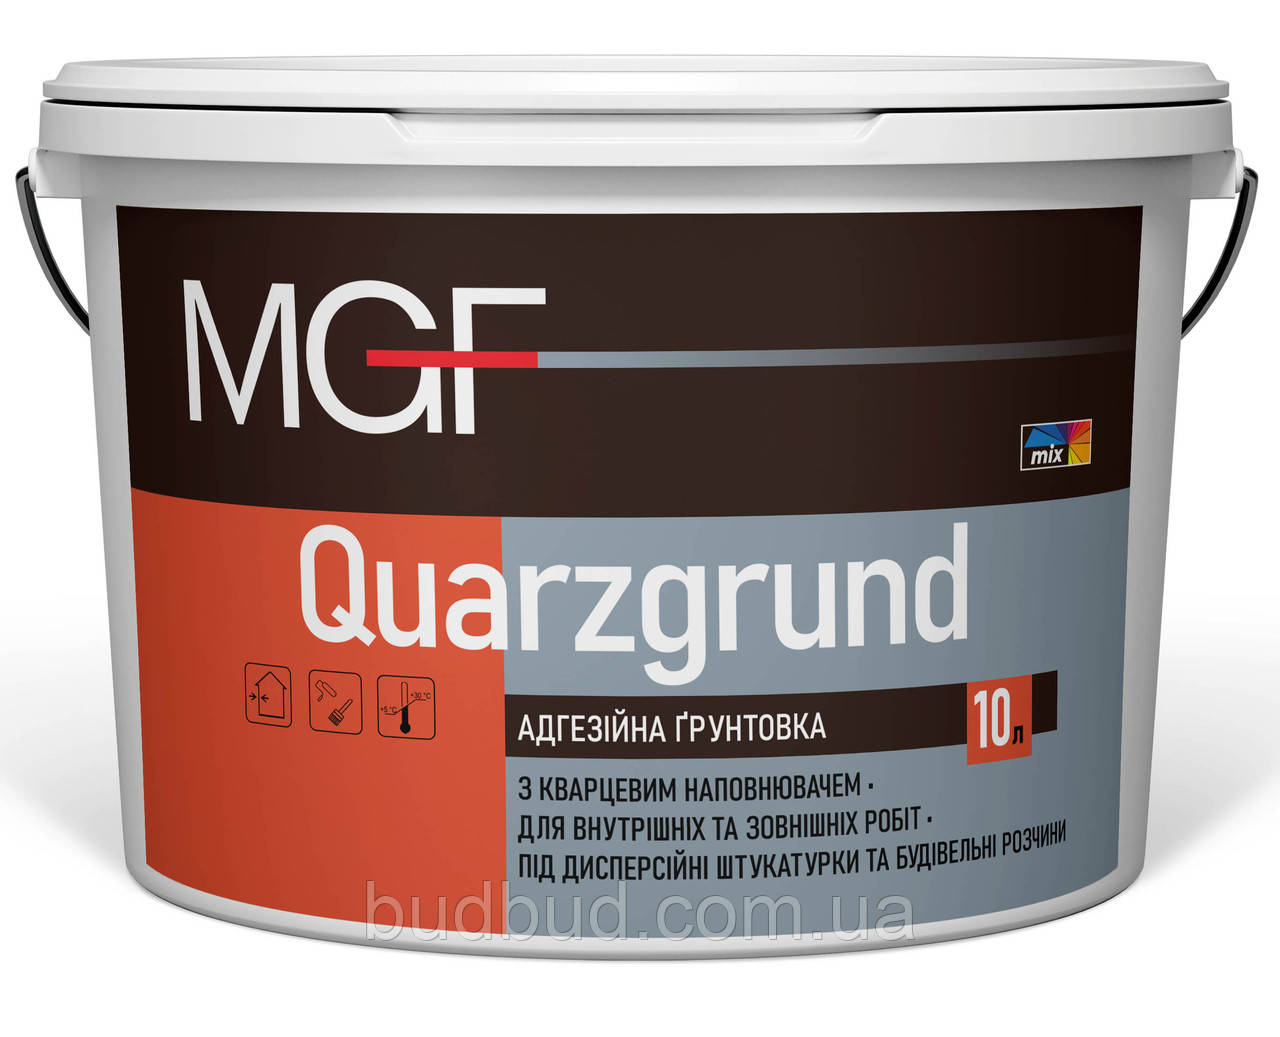 Адгезивна ґрунтівка з кварцем Quarzgrund M-815 MGF 10 л